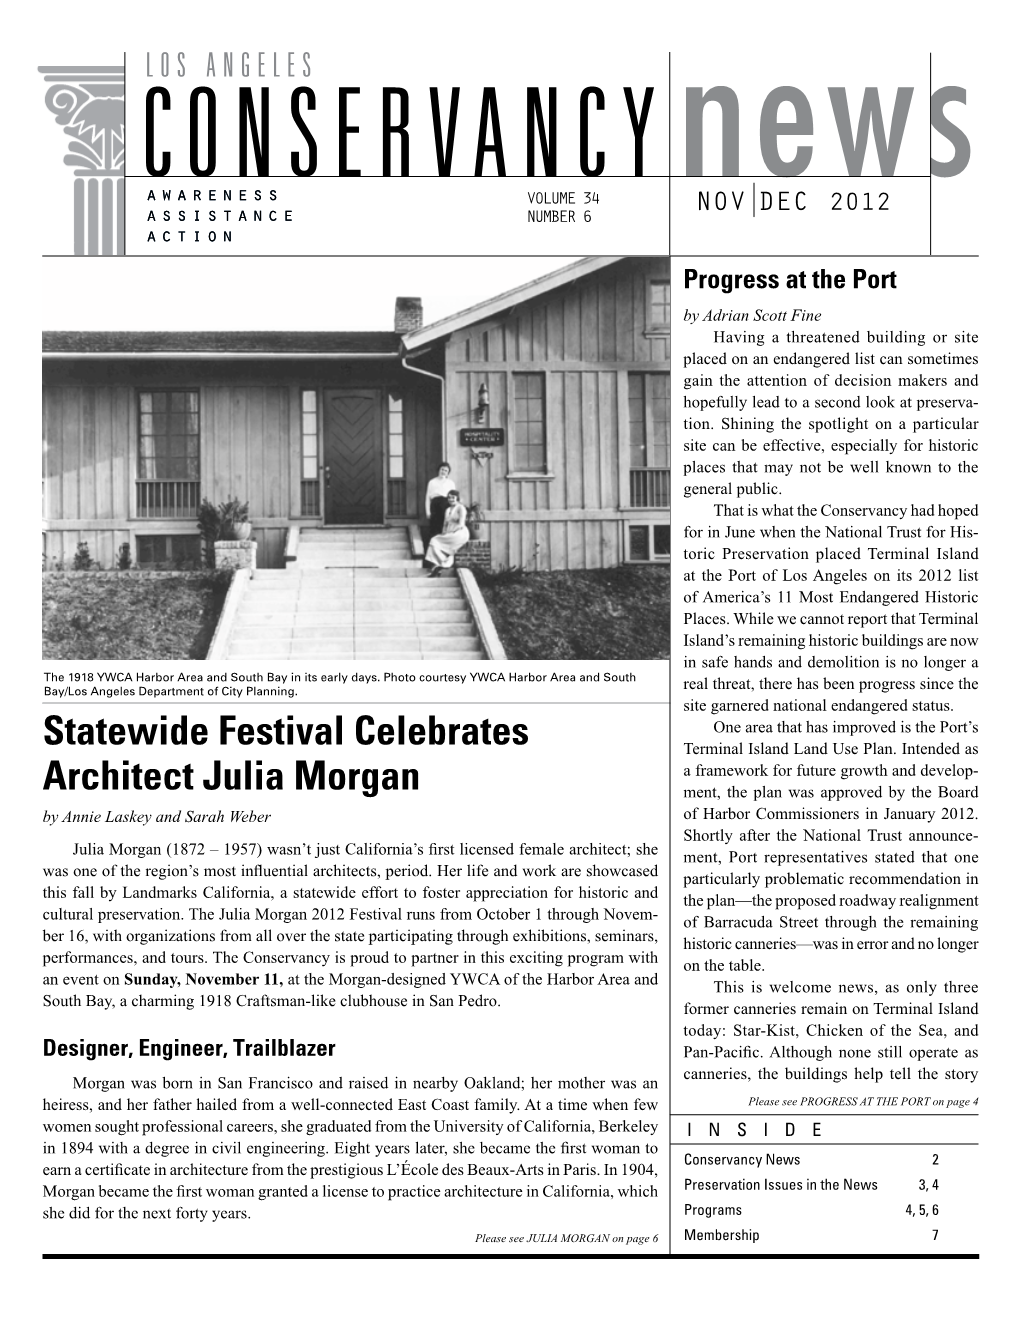 Statewide Festival Celebrates Architect Julia Morgan